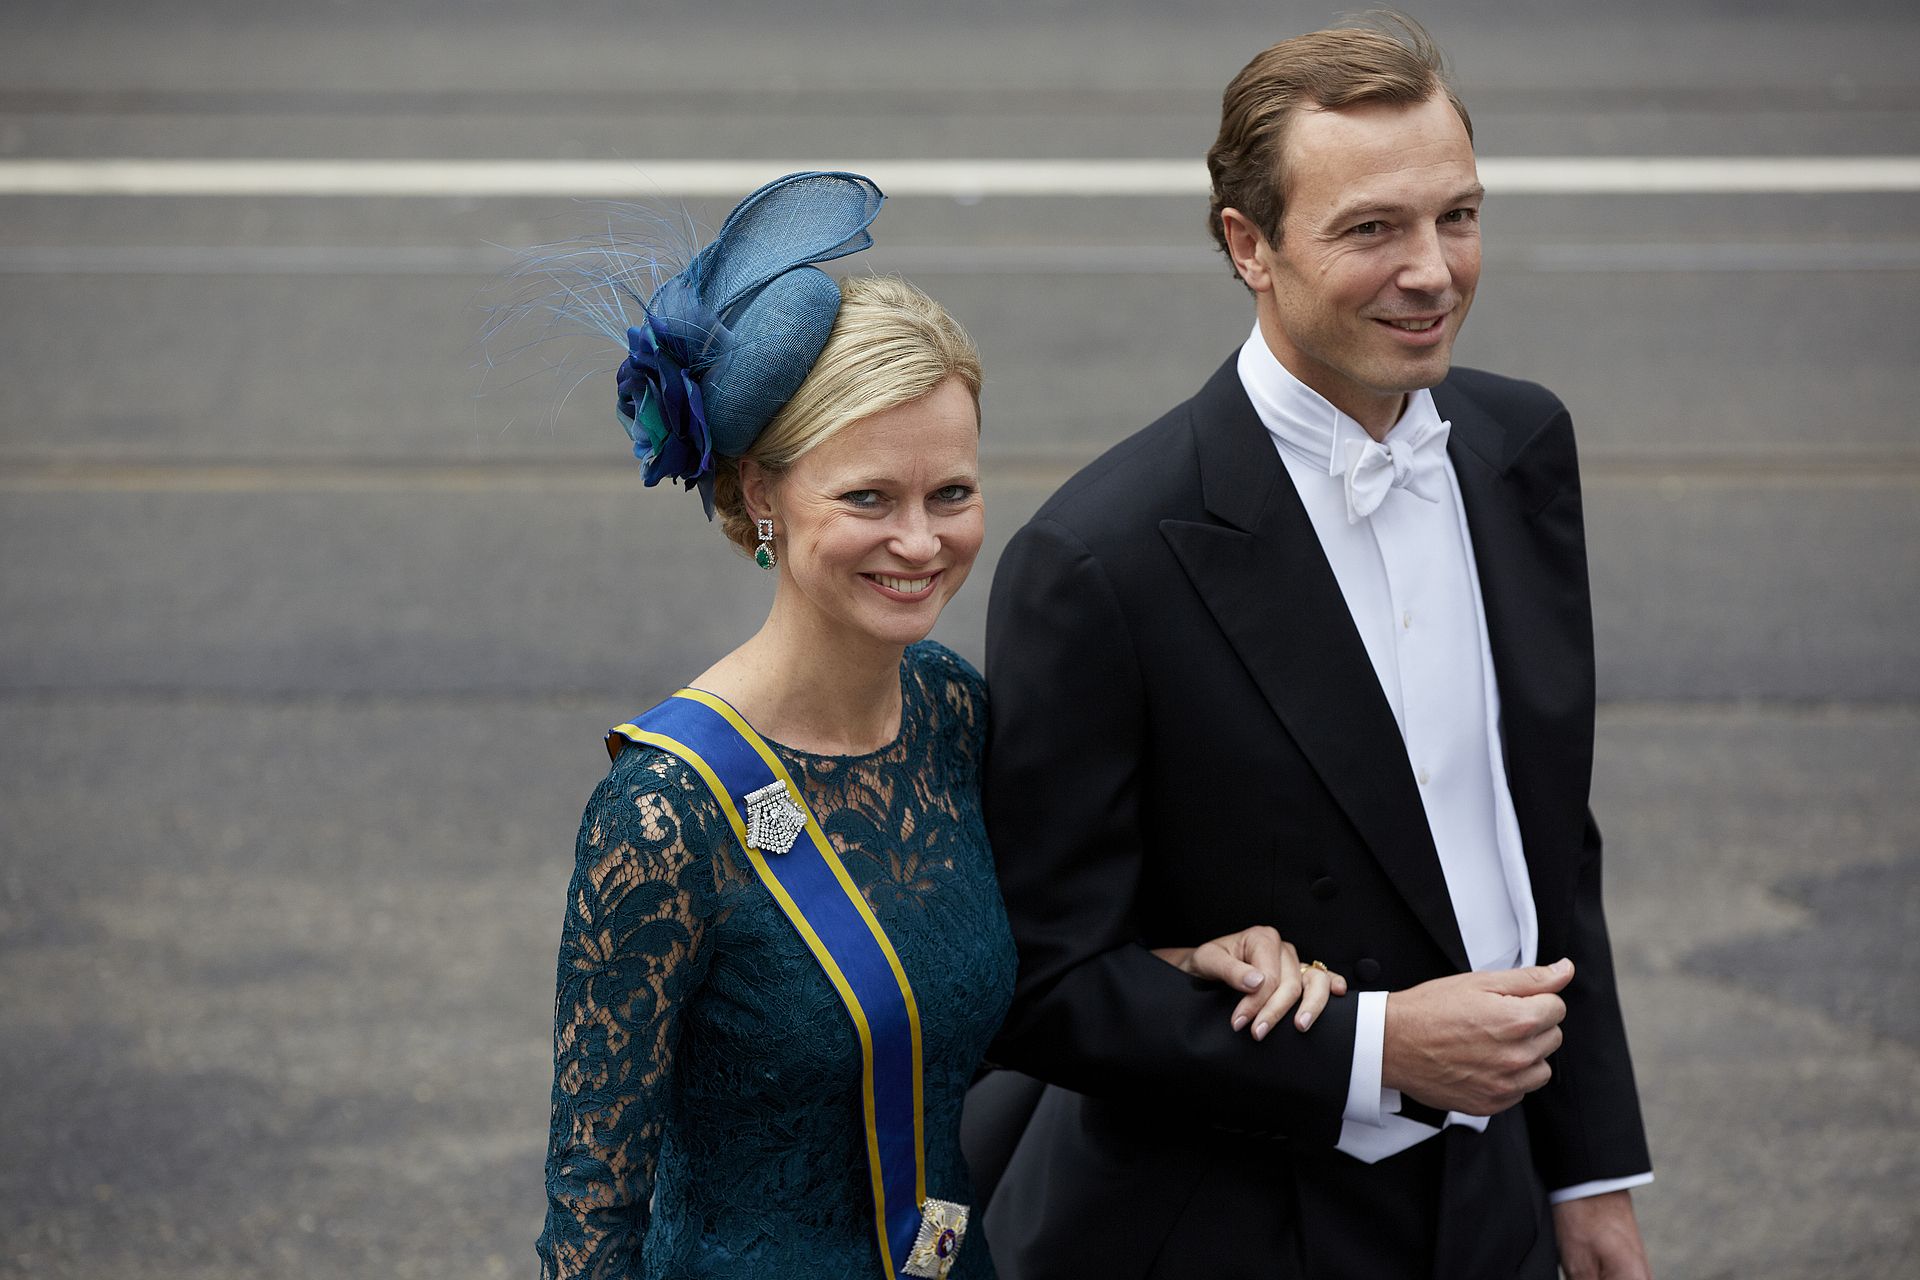 Carolina en Albert bij de inhuldiging van koning Willem-Alexander, 2013.